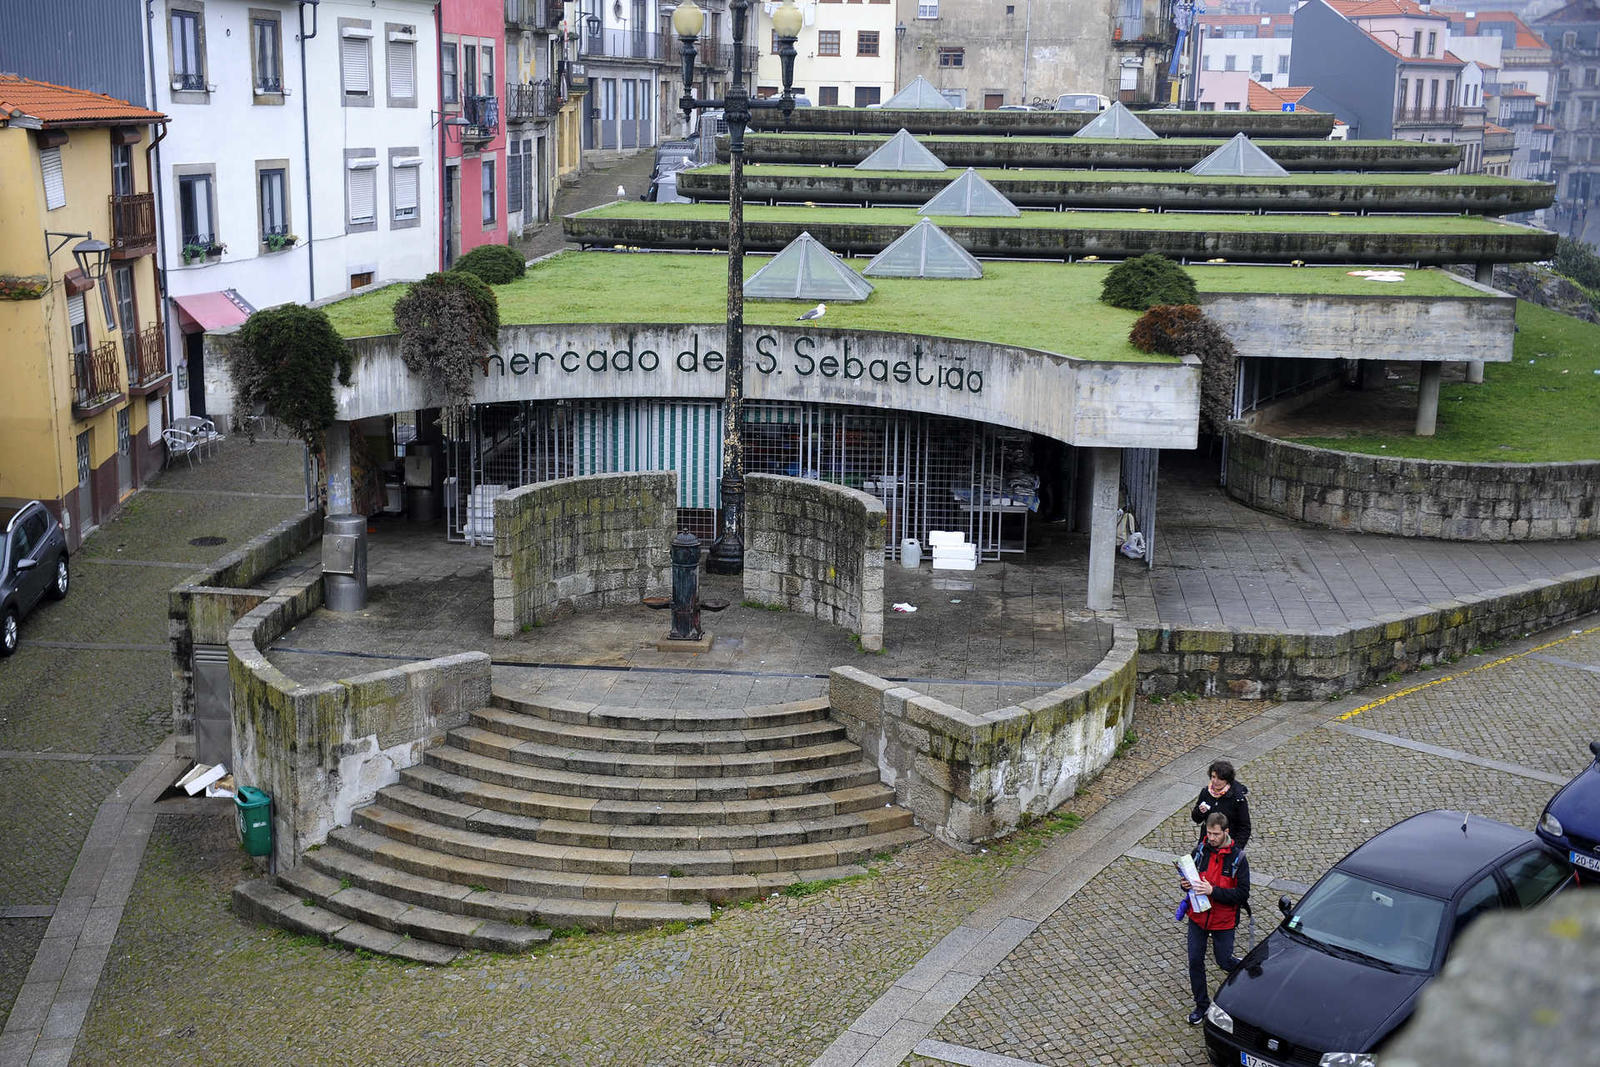 Mercado S. Sebastião, Porto